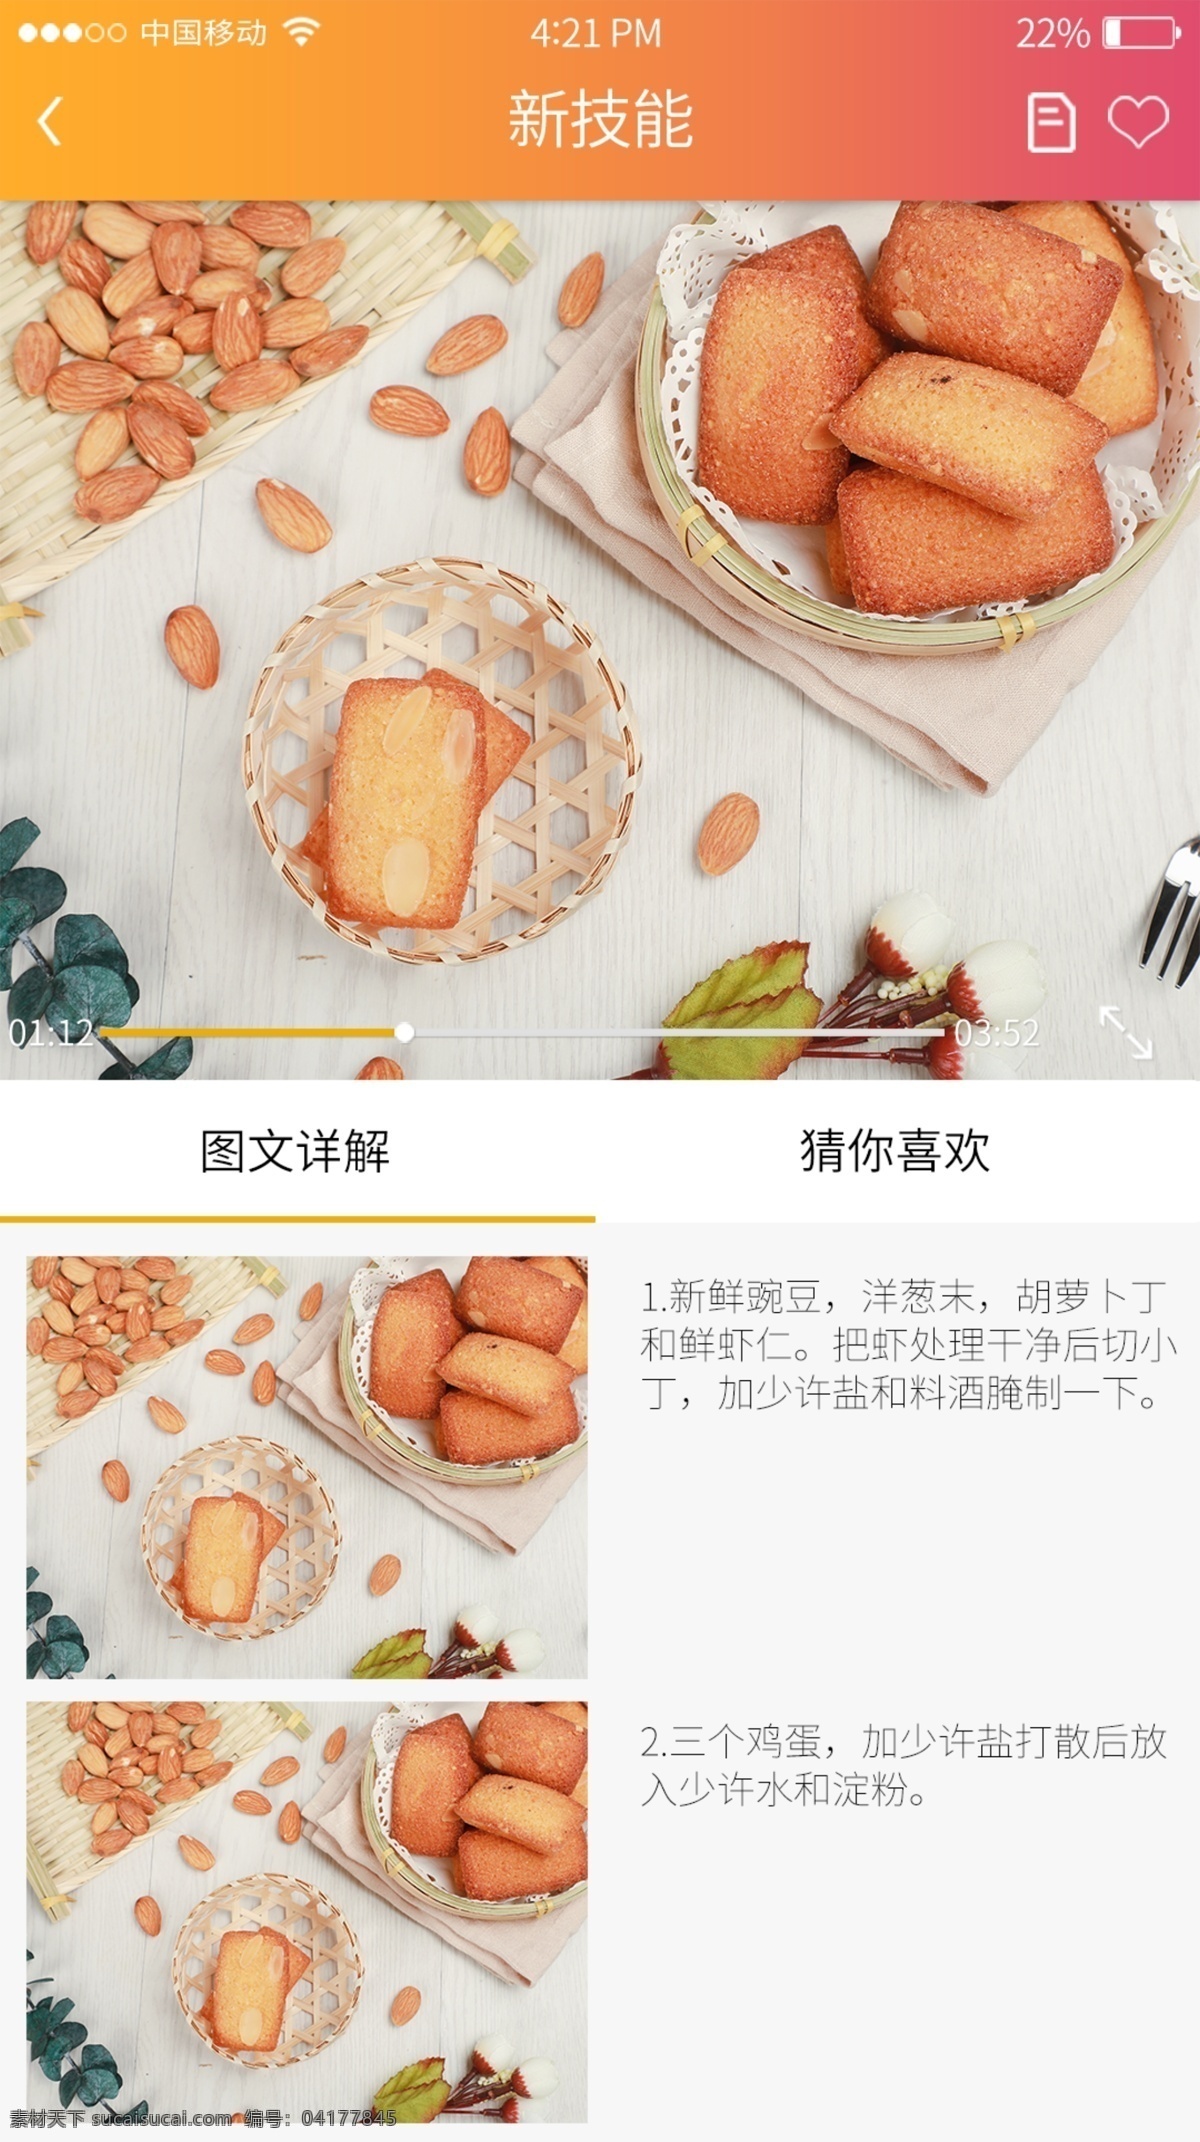 美食 app 菜单 视频 播放 页 界面设计 橙黄色渐变 视频播放插件 菜单列表 料理步骤 下级页面